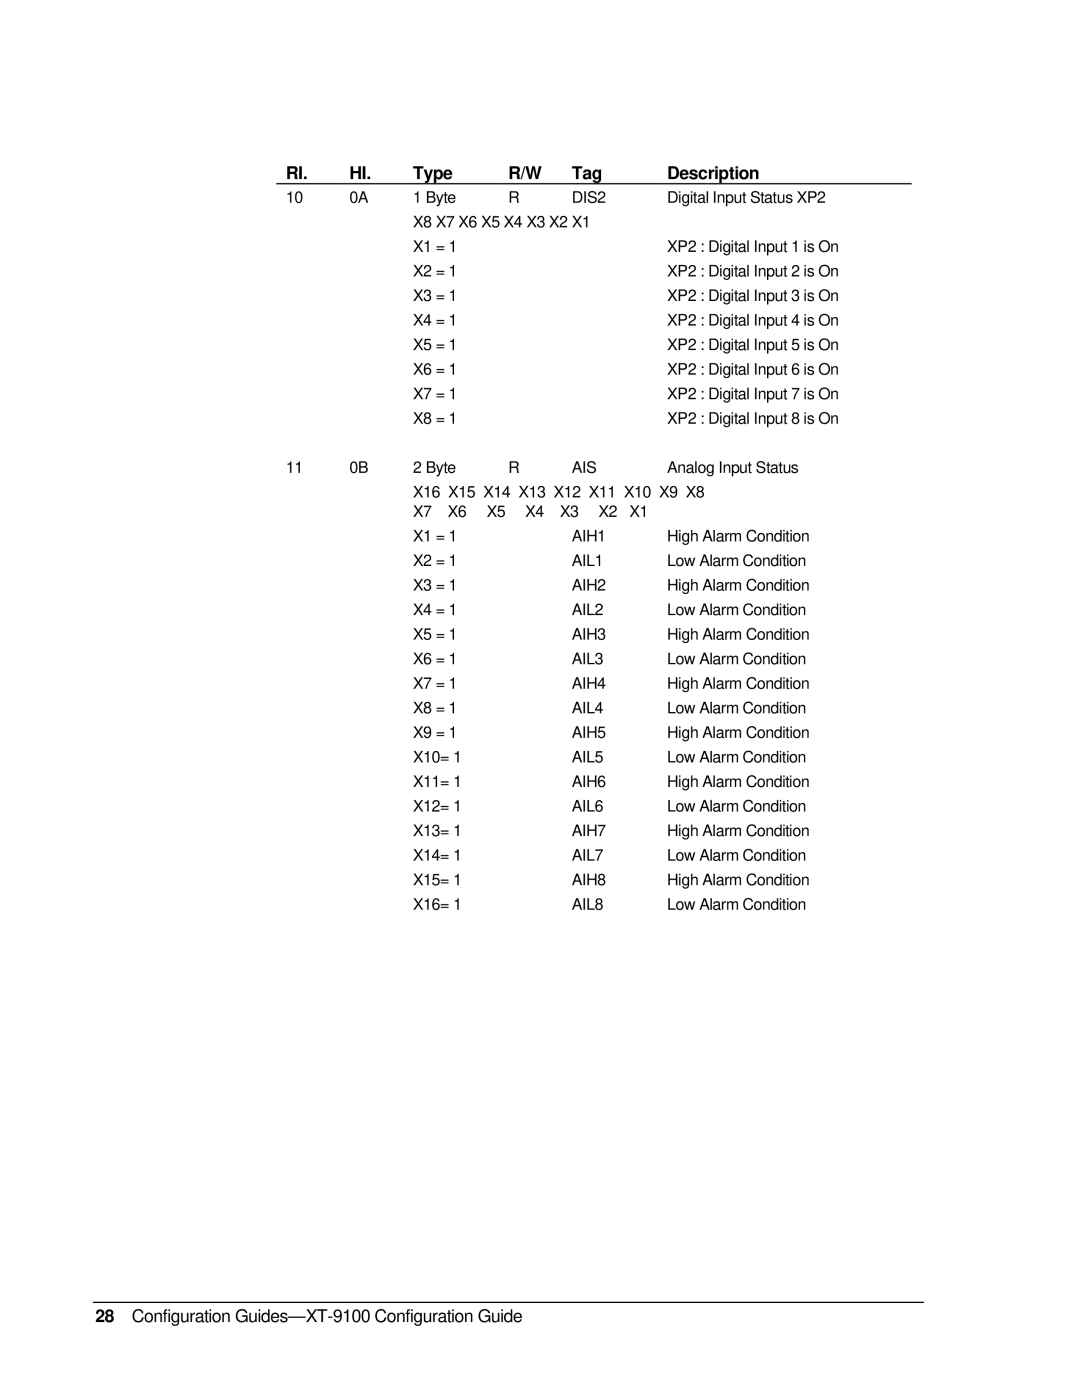 Johnson Controls XP-910x appendix Type, R/W Tag, Description, Configuration Guides-XT-9100 Configuration Guide 